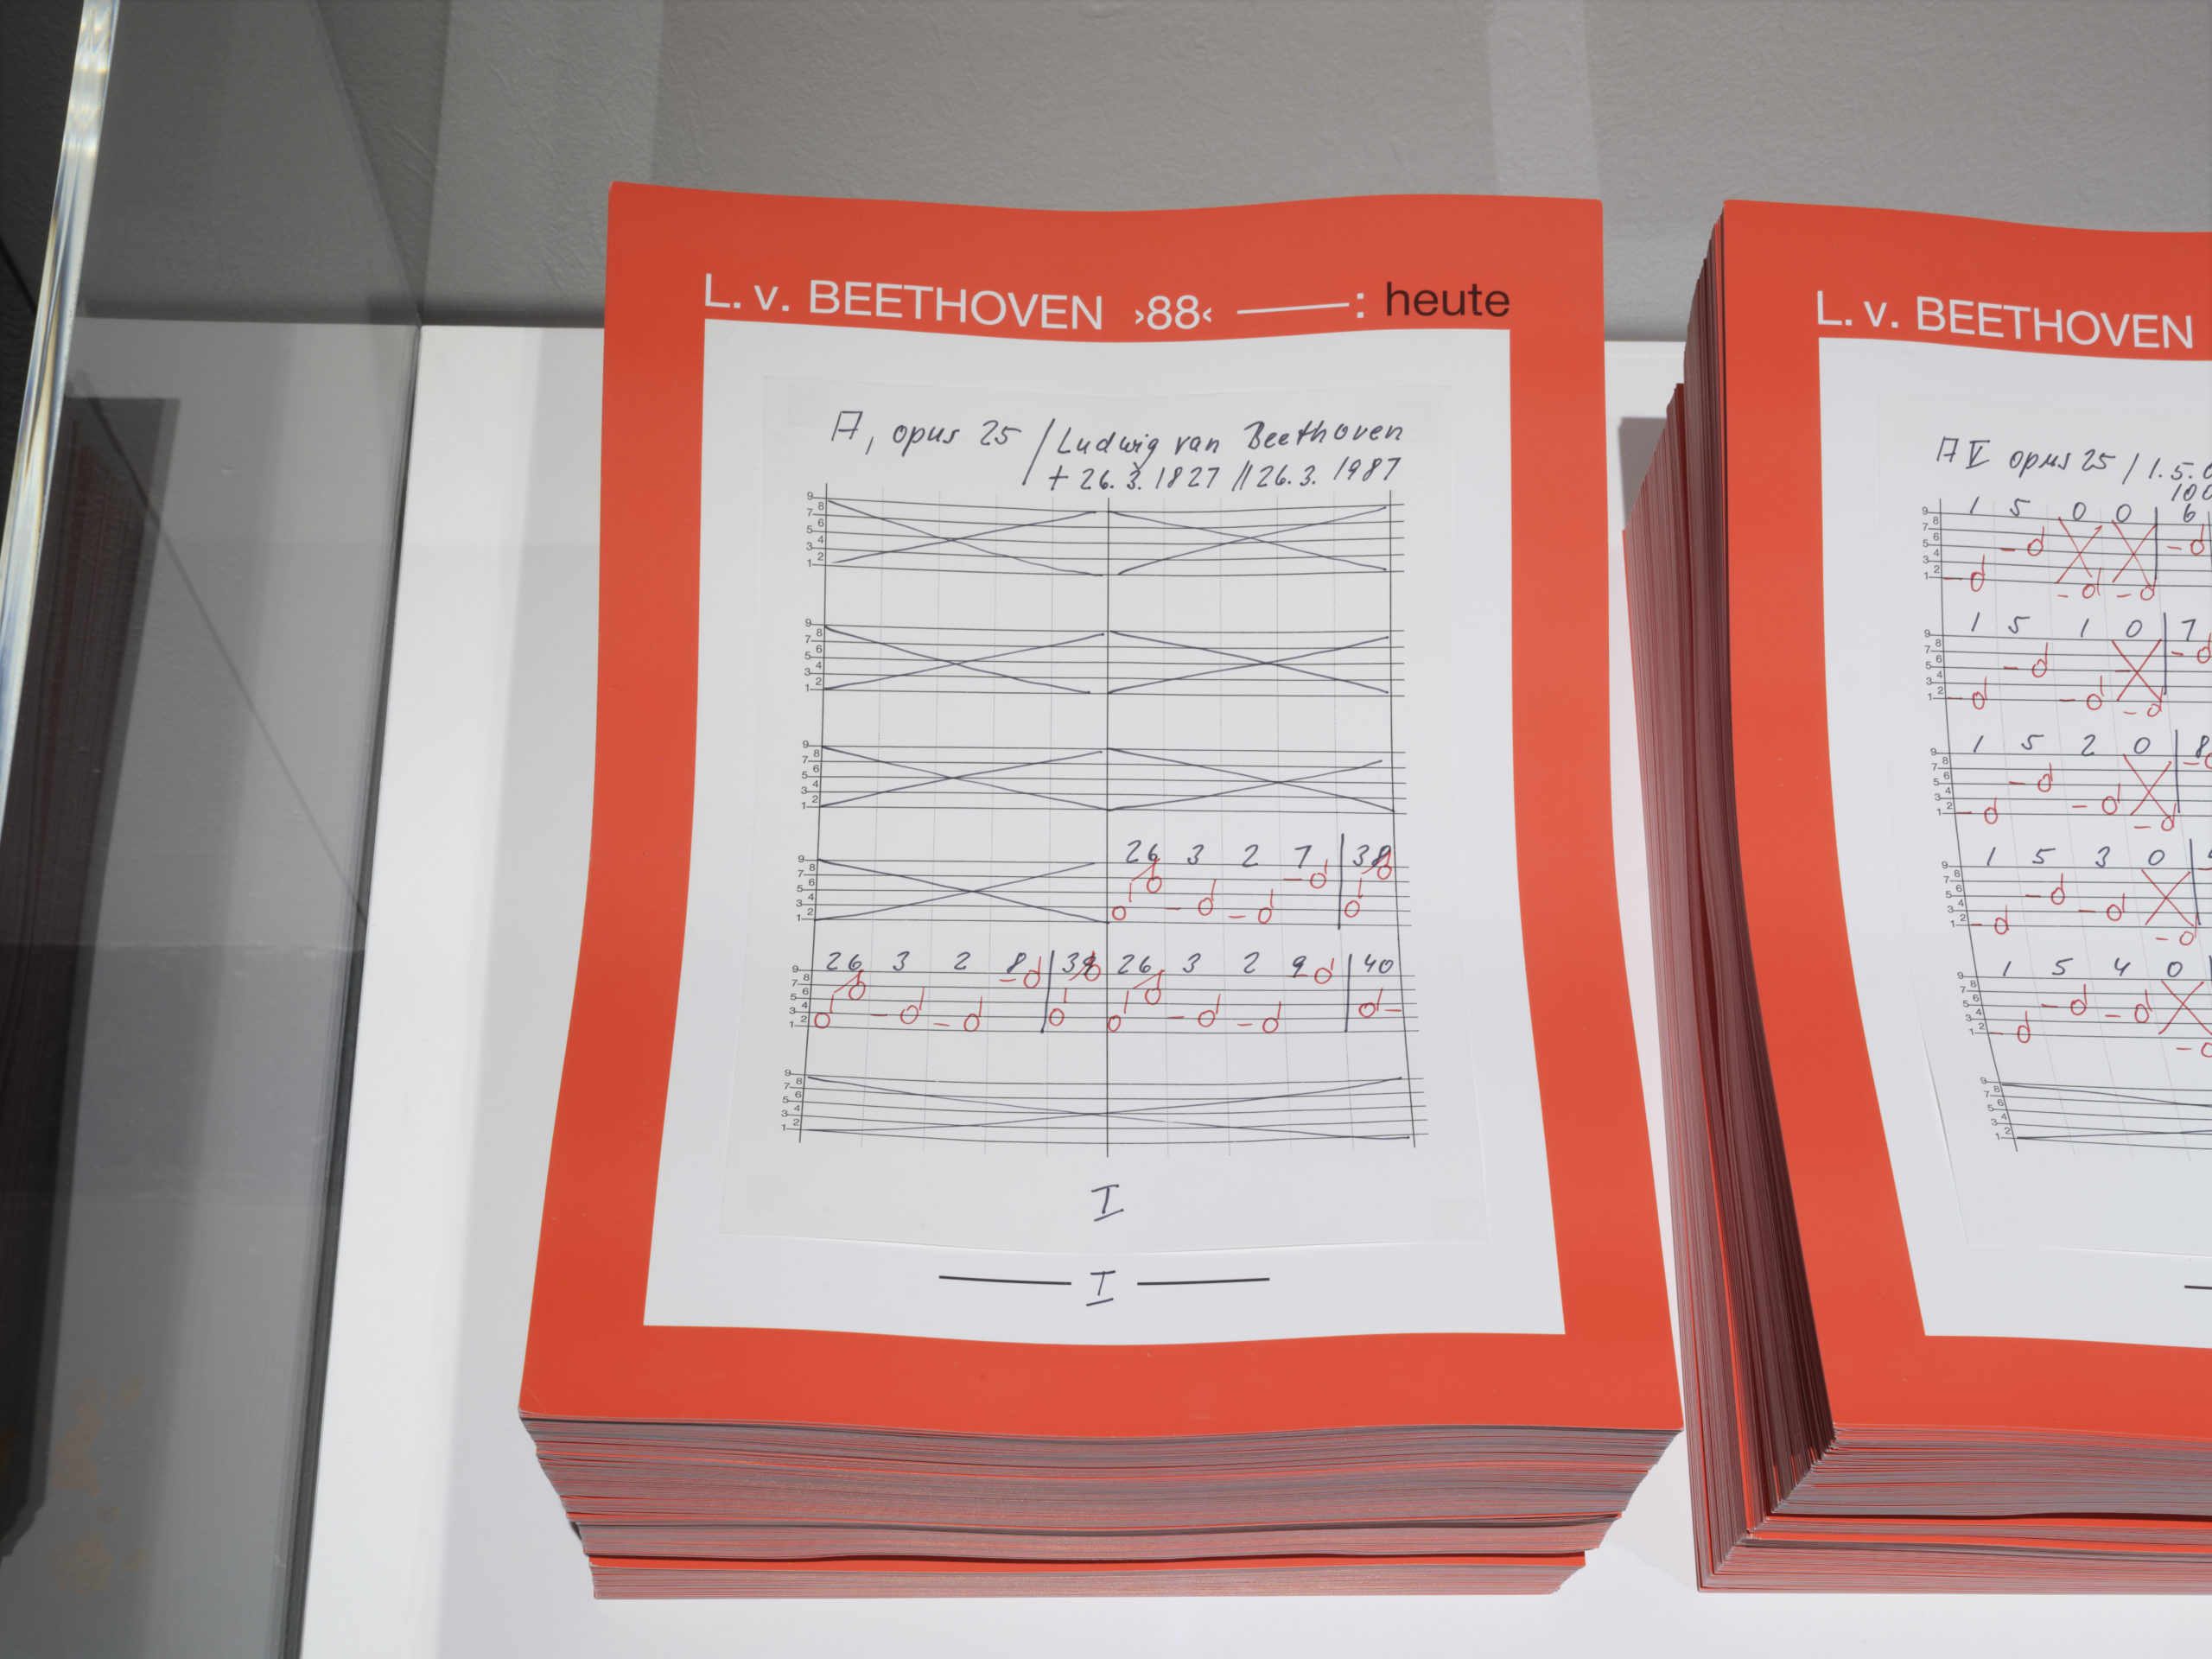 Hanne Darboven, Opus 25 A "Ludwig Van Beethoven", Heidi, 2023